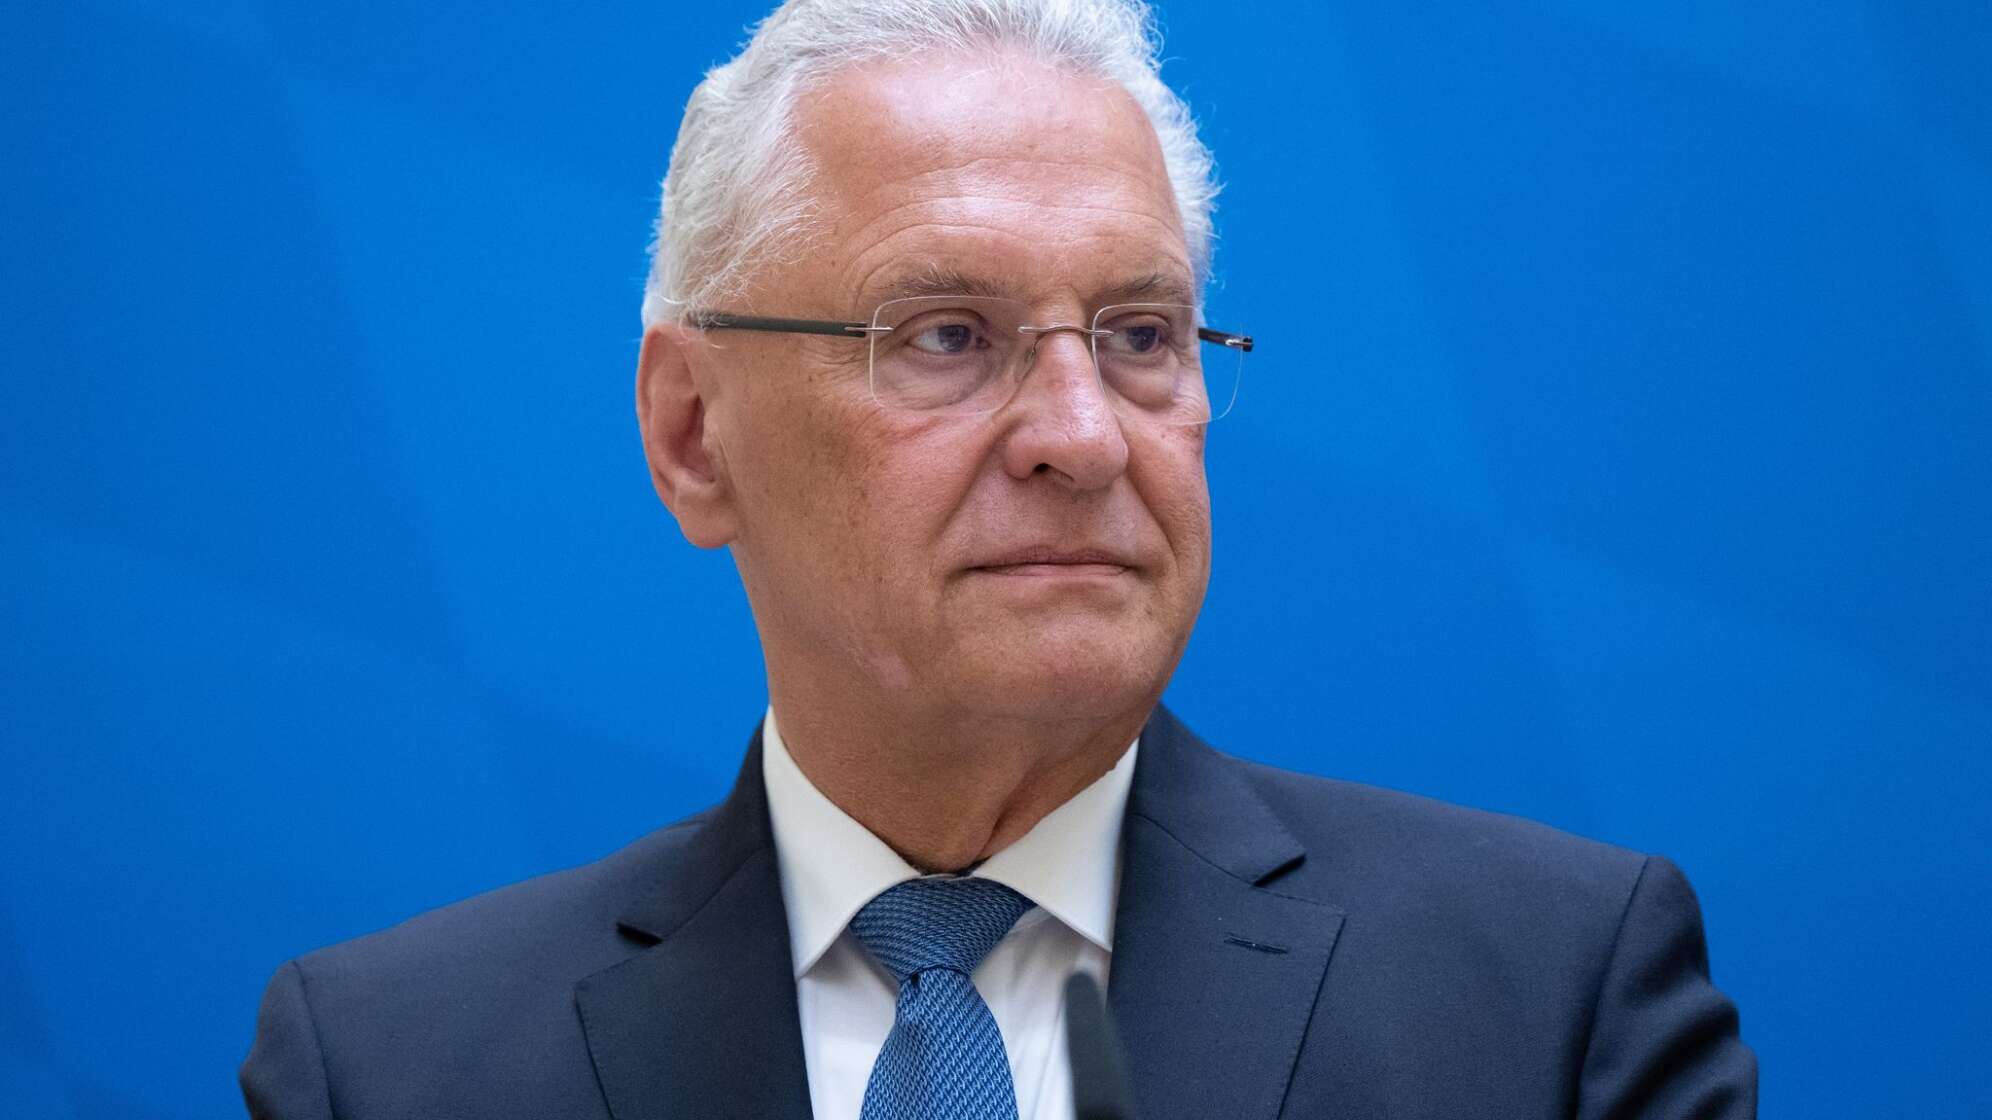 Bayerns Innenminister Joachim Herrmann